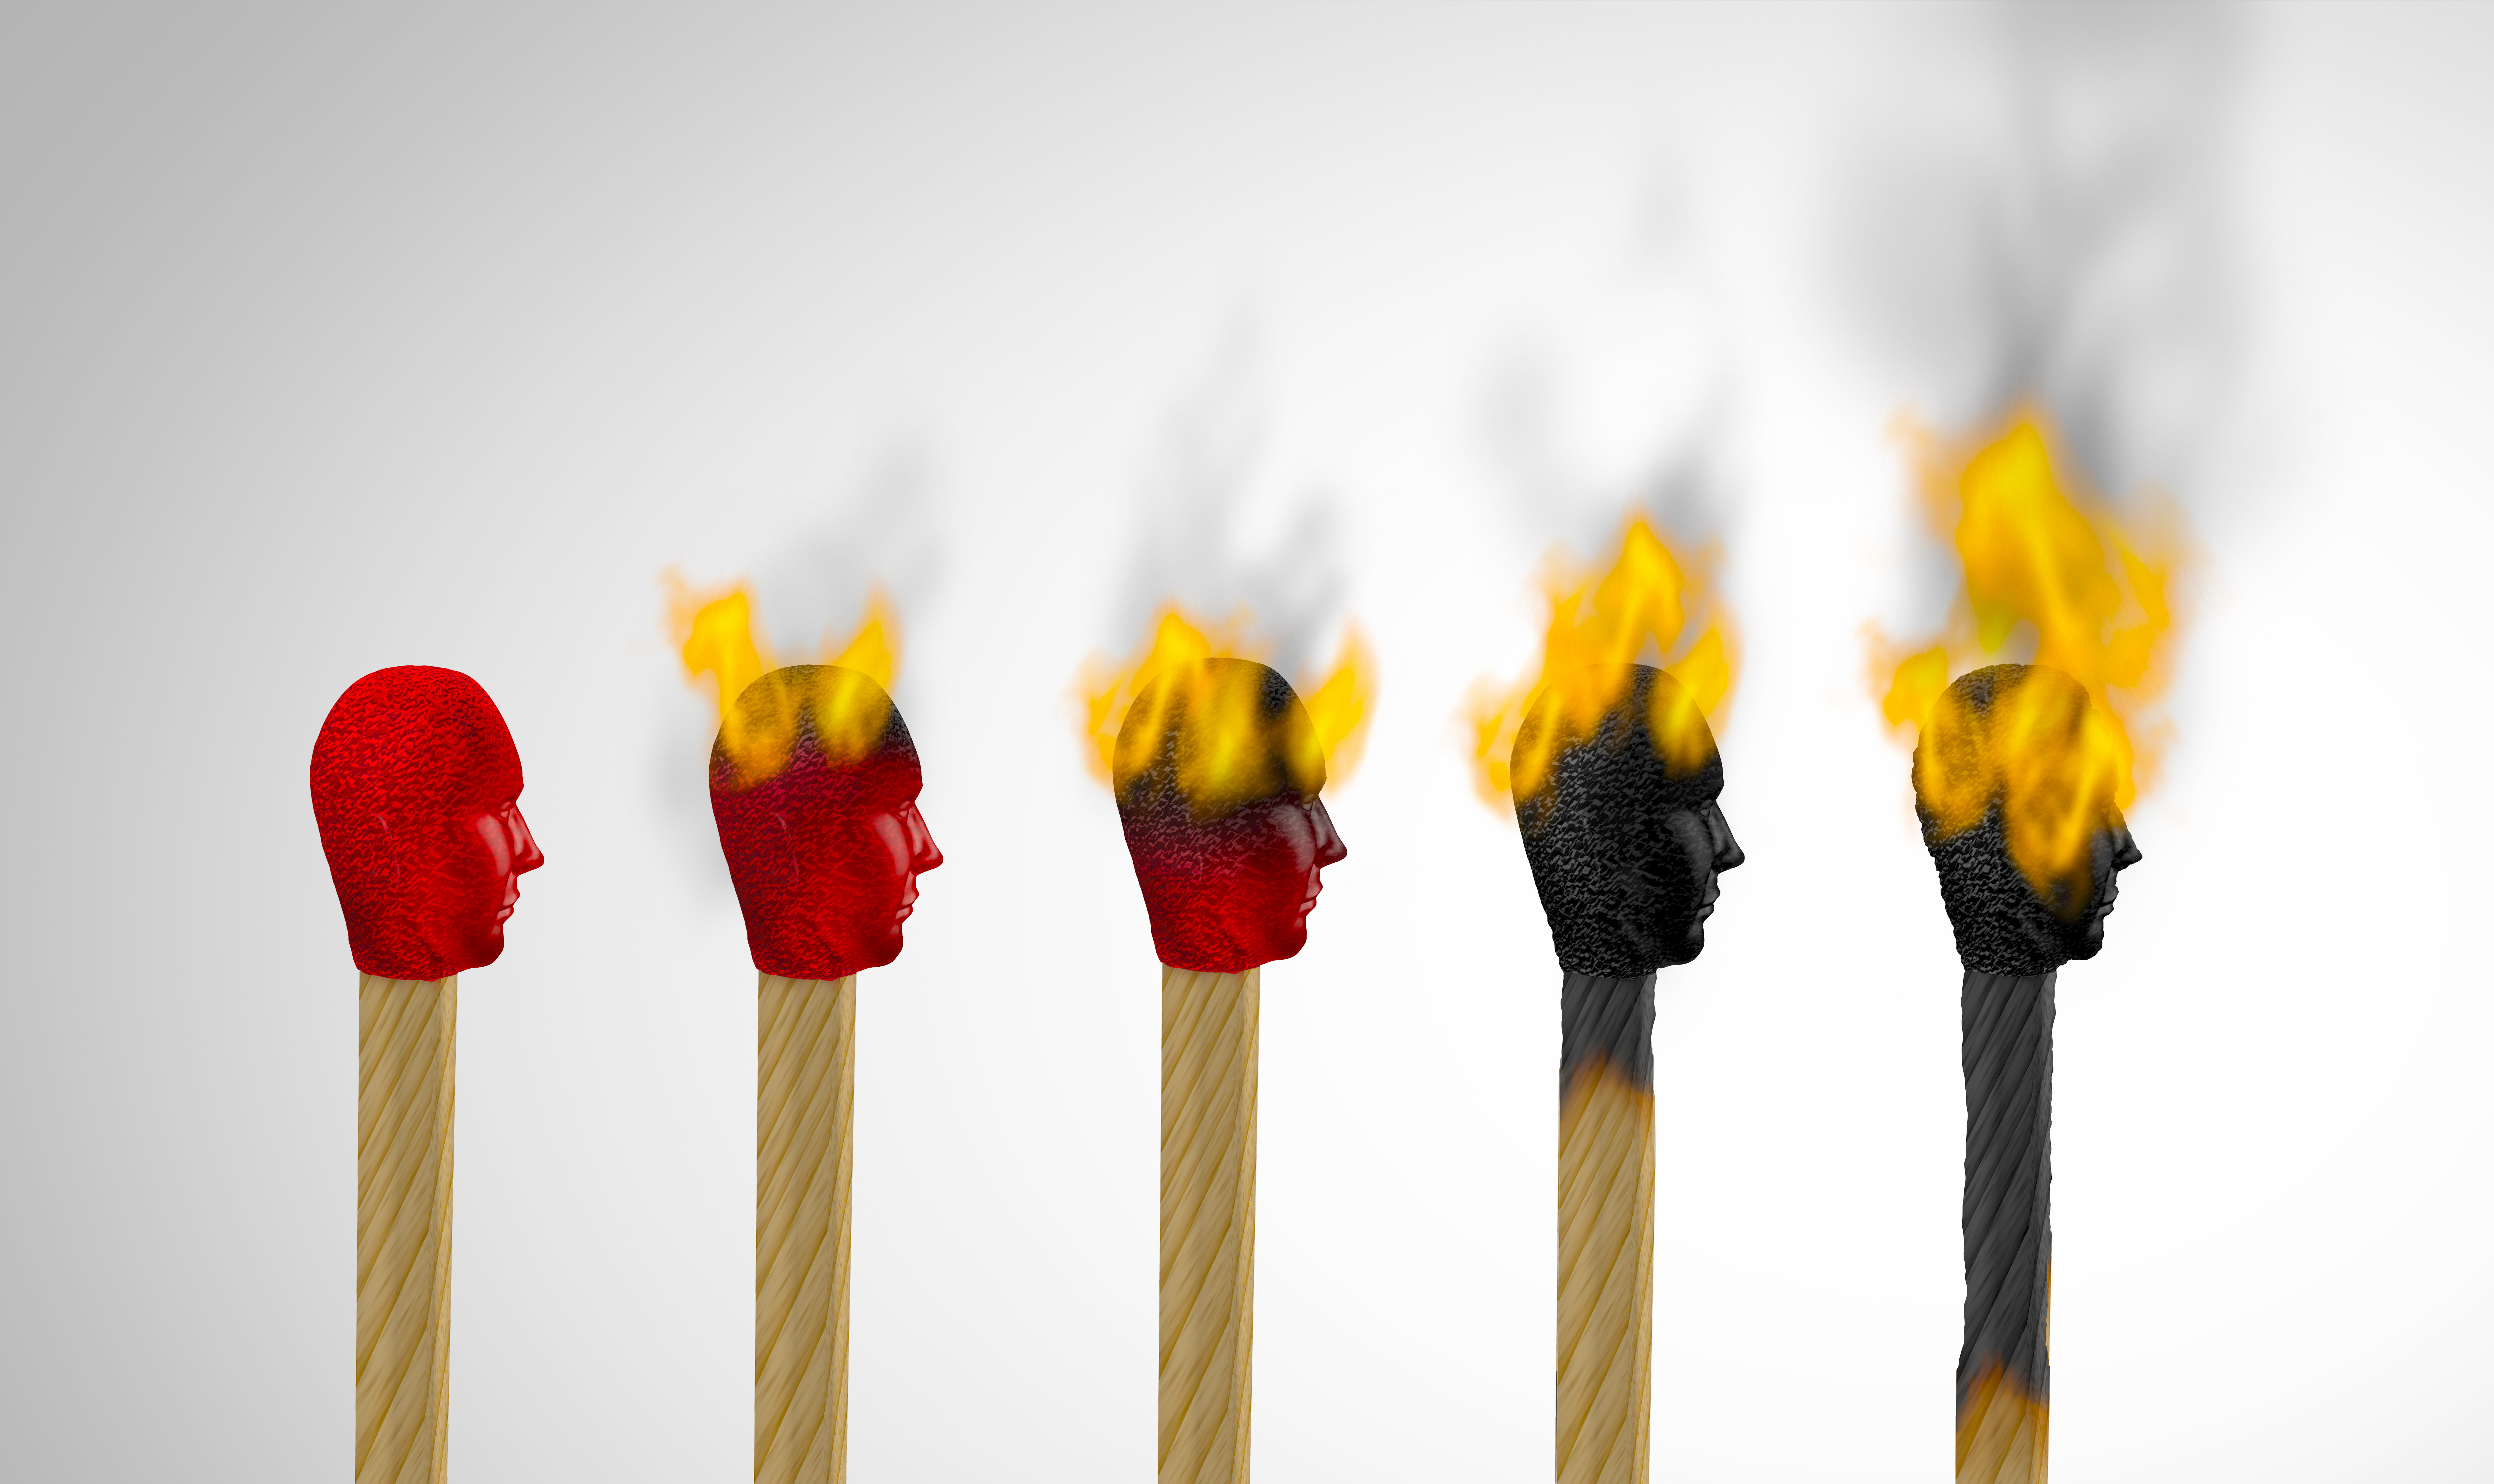 Das Bild zeigt 5 unterschiedlich abgebrannte Strichhölzer in einer Reihe um Burnout darzustellen.